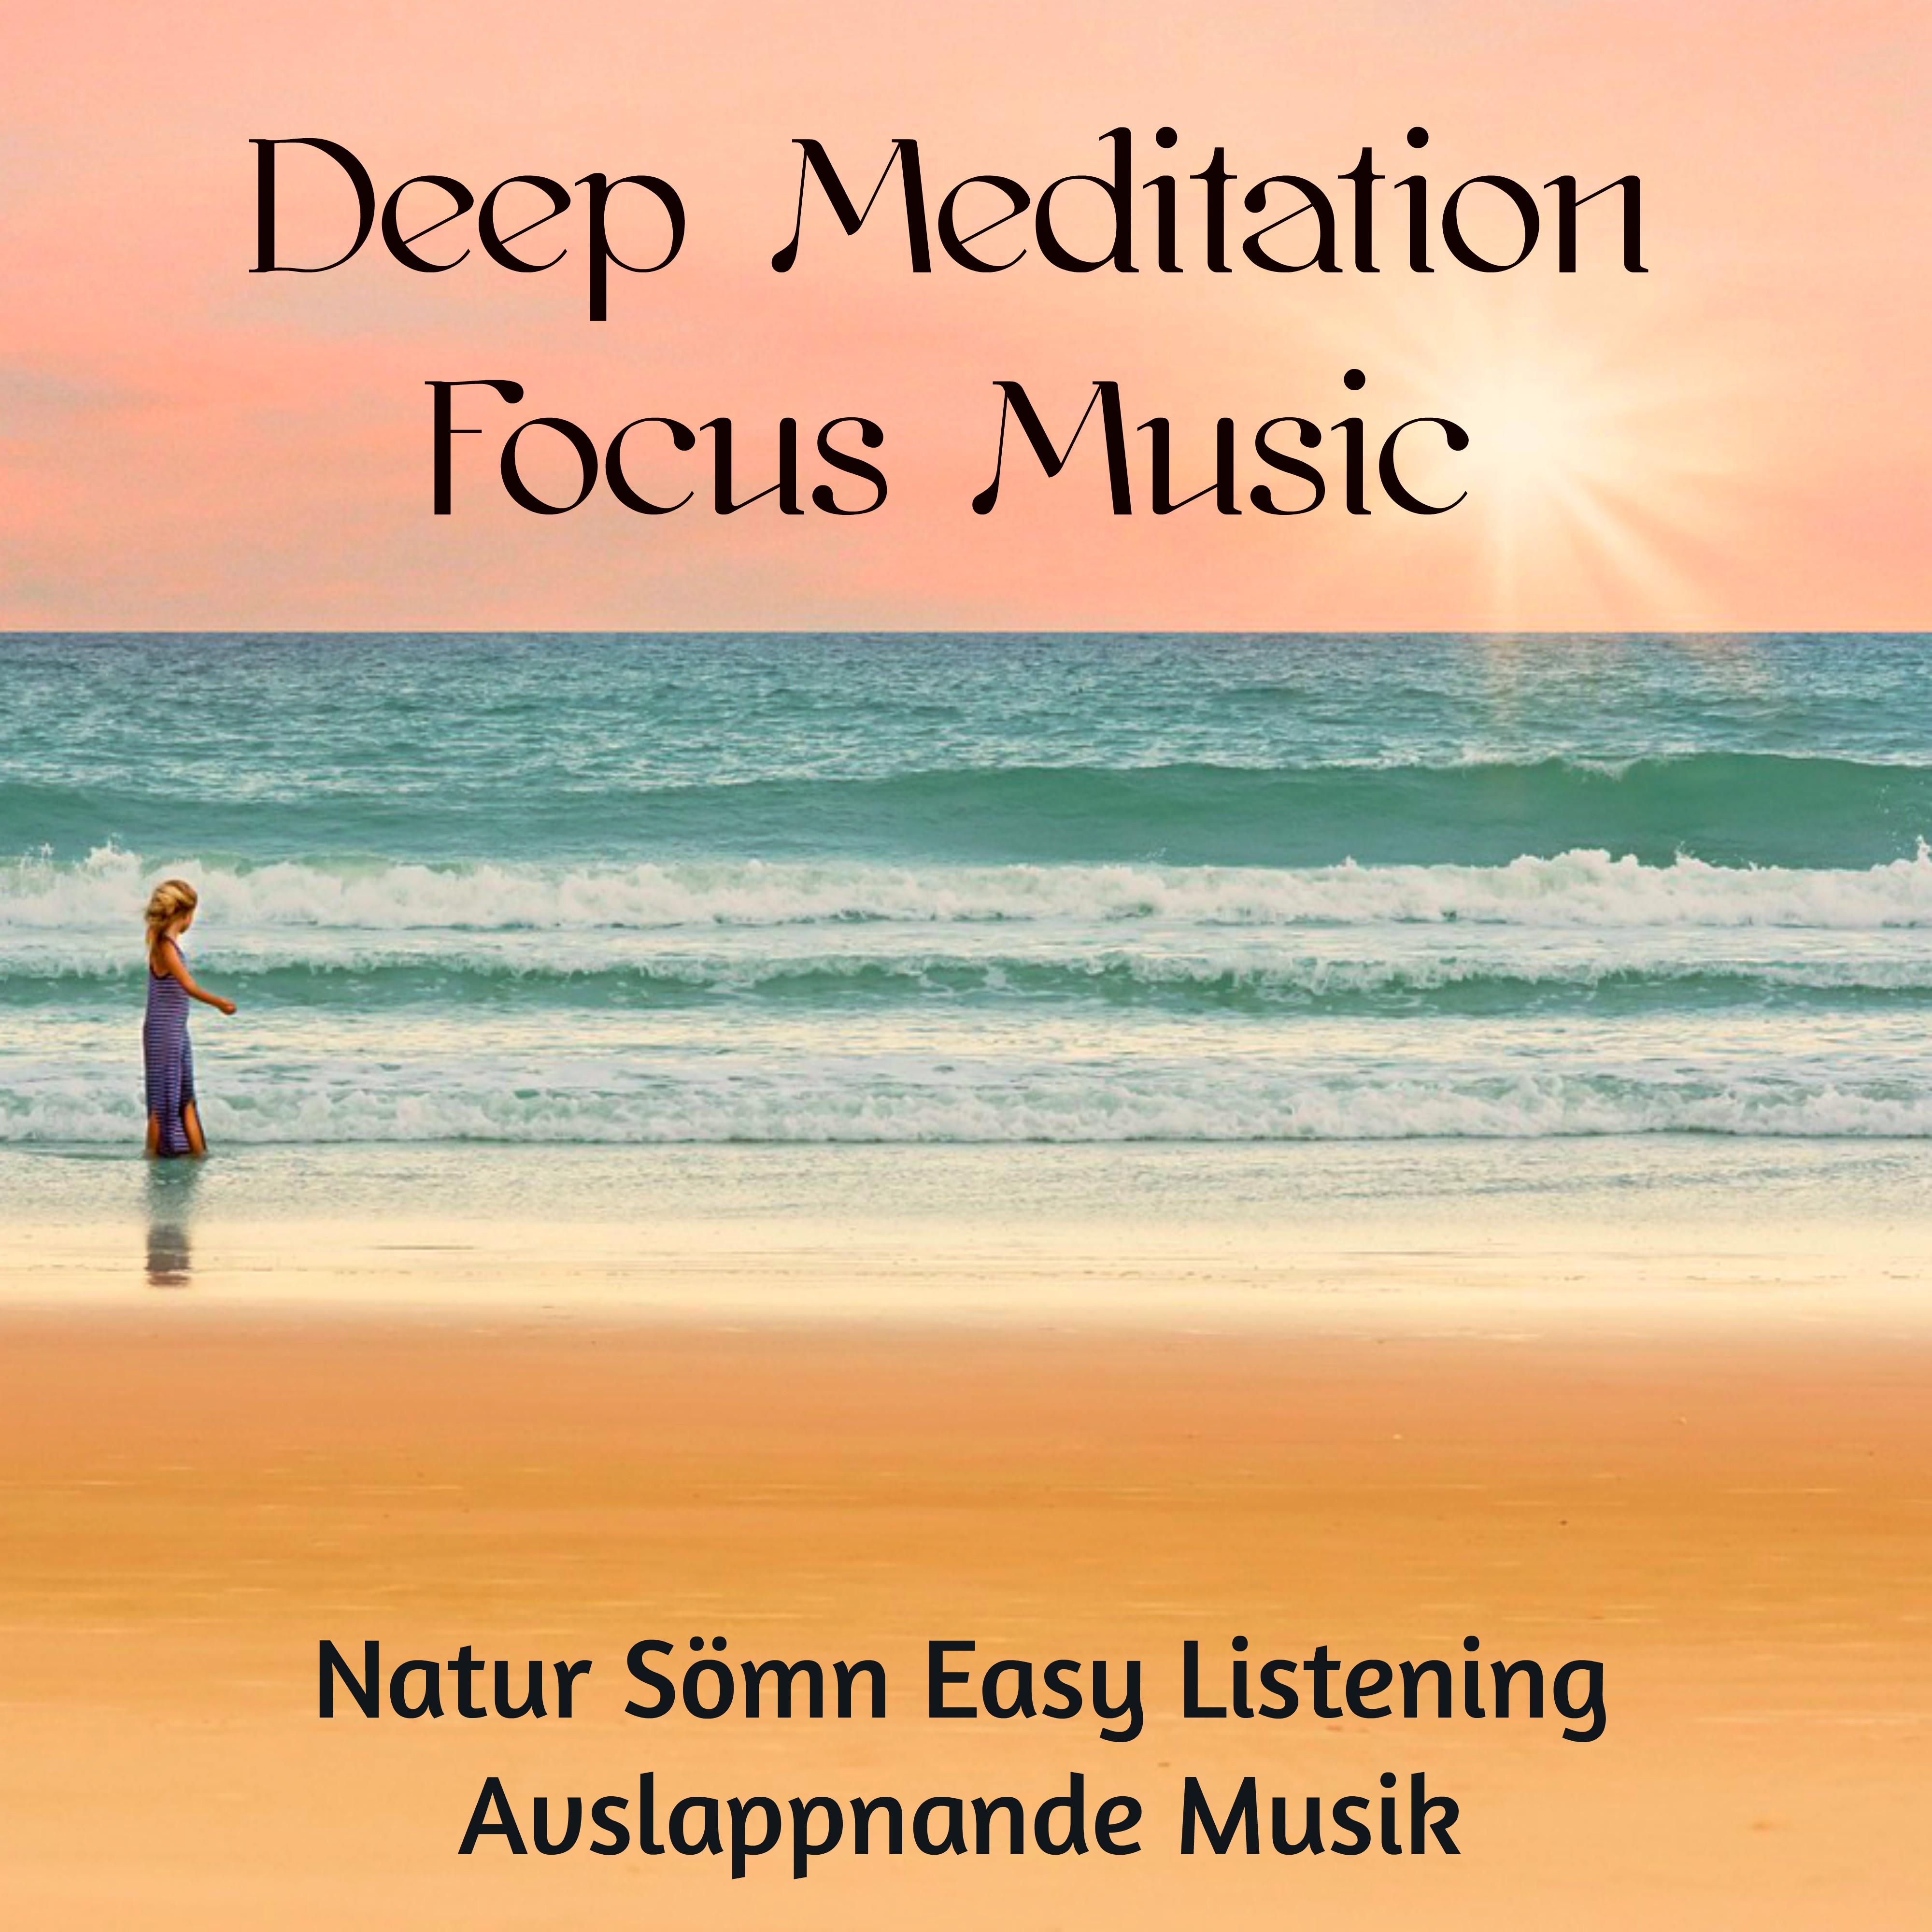 Deep Meditation Focus Music - Natur Sömn Easy Listening Avslappnande Musik för Andlig och Healing Mindfulnessträning